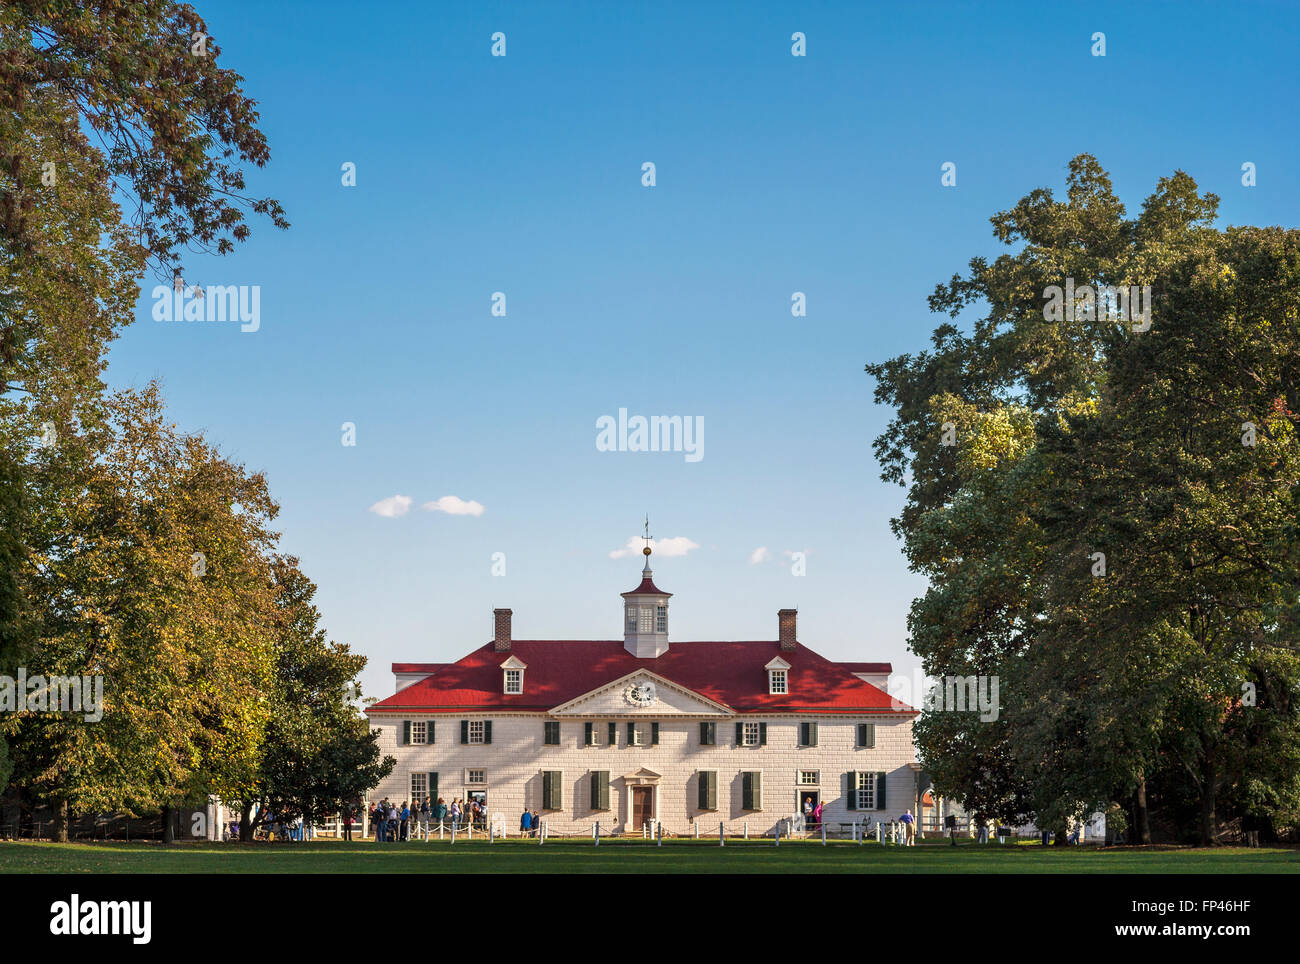 La plantation de Mount Vernon Estate accueil hôtel particulier de George et Martha Washington. Près de Alexandria en Virginie et à Washington DC. Banque D'Images